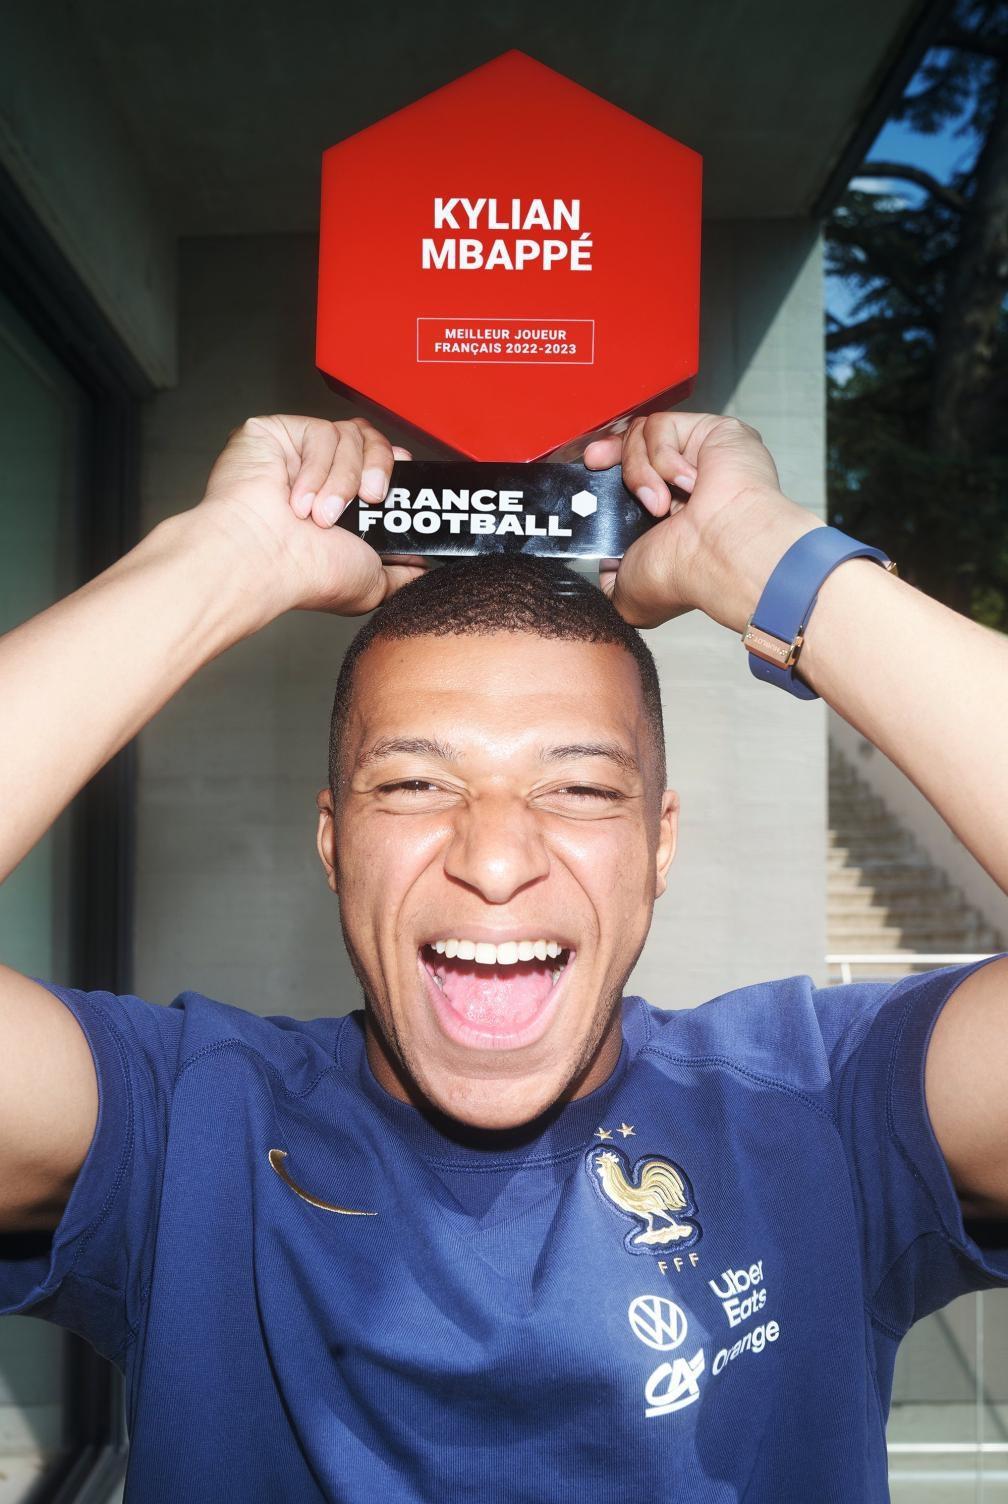 姆巴佩的野心应该就是金球奖了，所以他怒怼了巴黎圣日耳曼

在拿到了《法国足球》评(1)